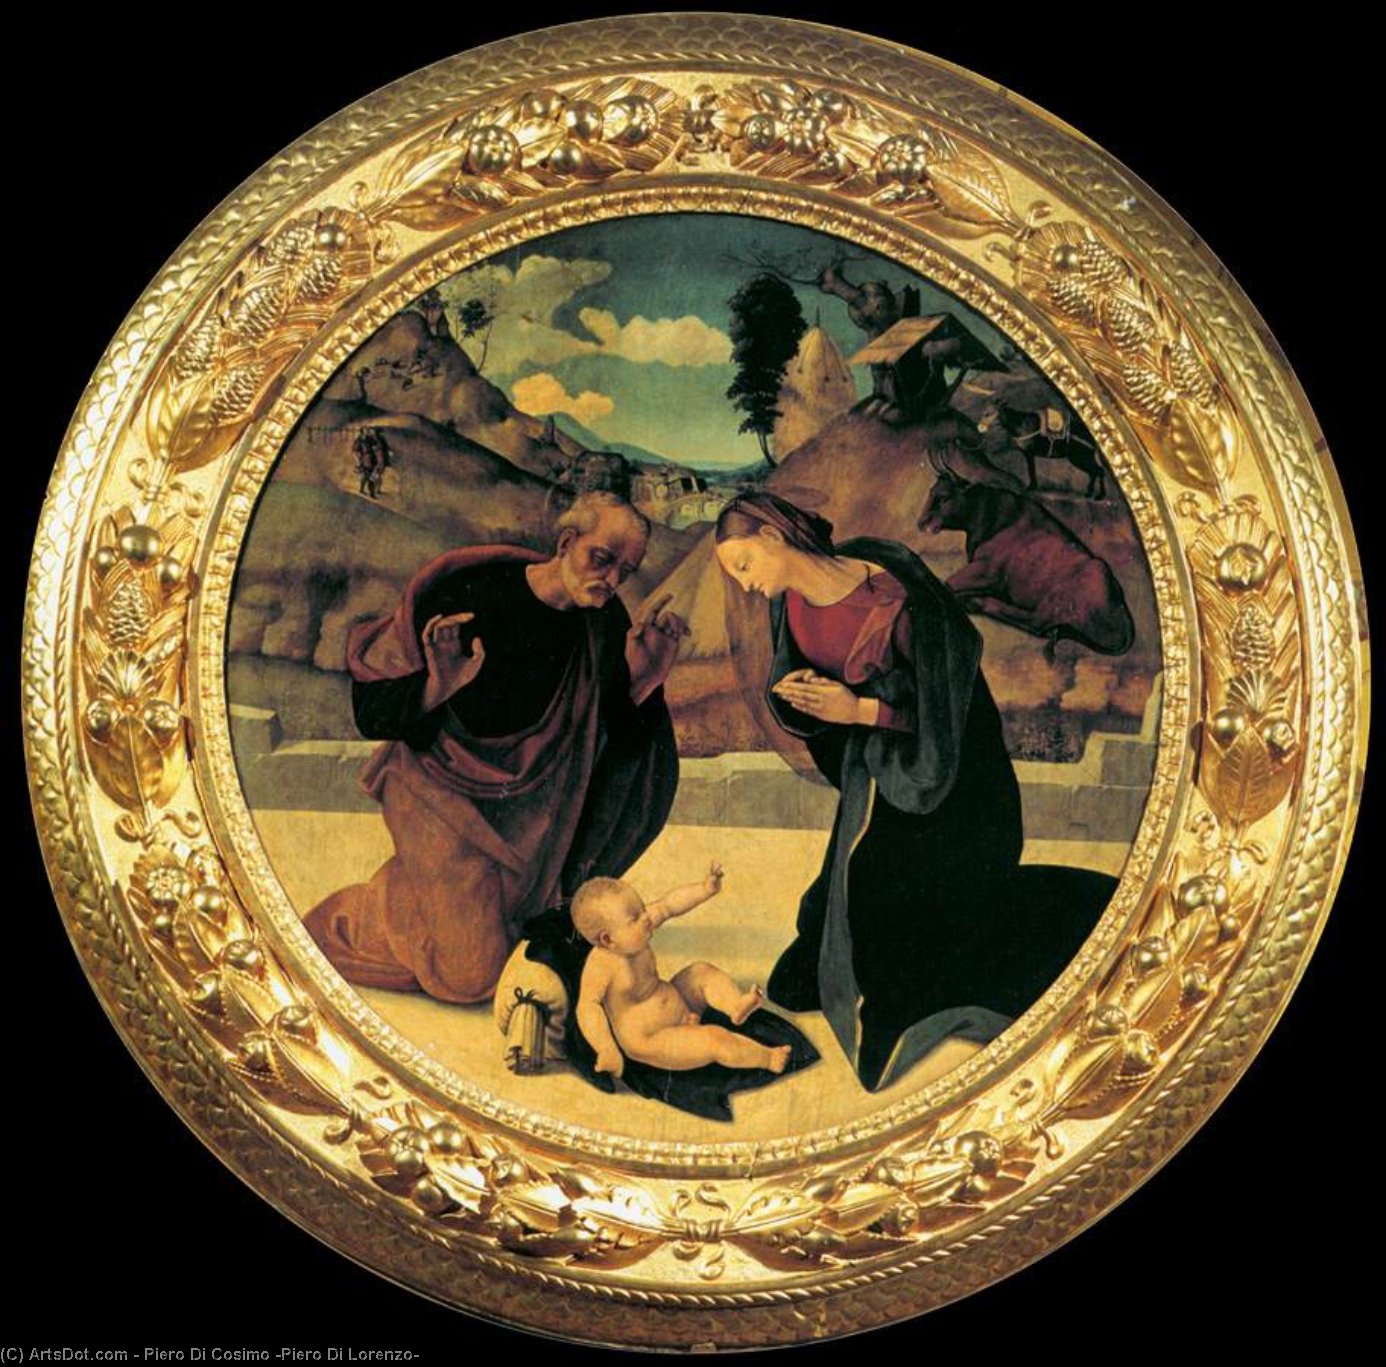 購入 美術館の複製、美術複製、絵画複製、美術館の品質プリント、美術品の複製、有名な絵画の複製、博物館の品質再現、キャンバスにアートプリント 児童の保護, 1510 バイ Piero Di Cosimo (Piero Di Lorenzo) (1462-1522, Italy) | ArtsDot.com